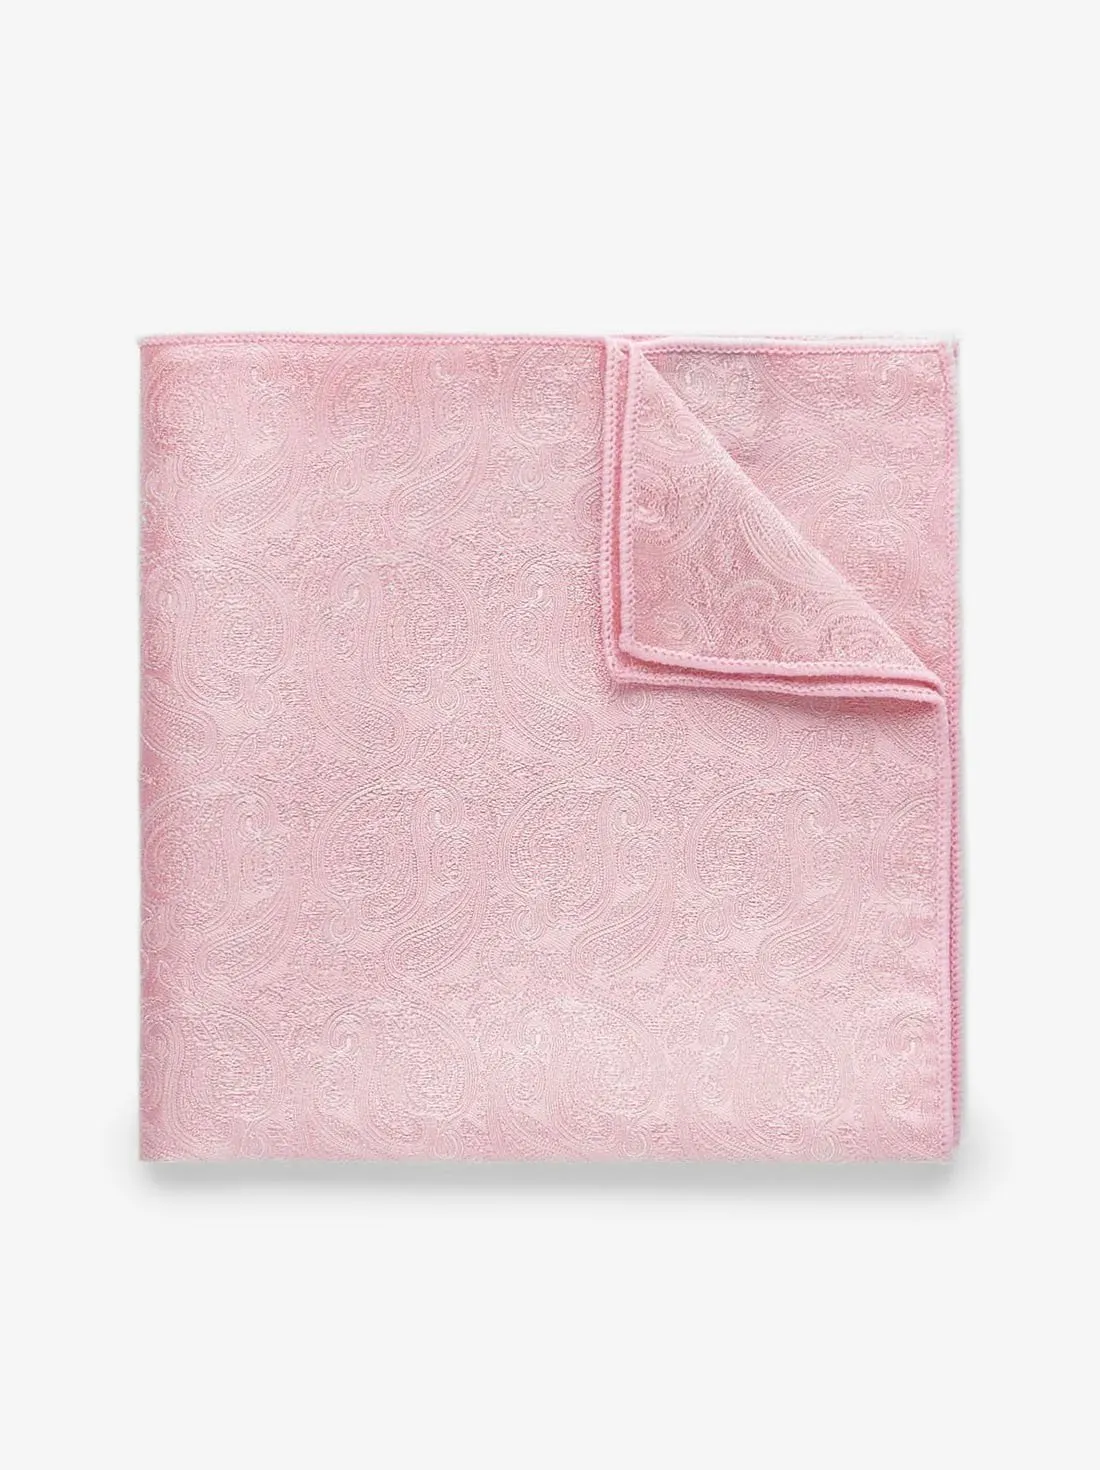 Pink Pocket Square Formal